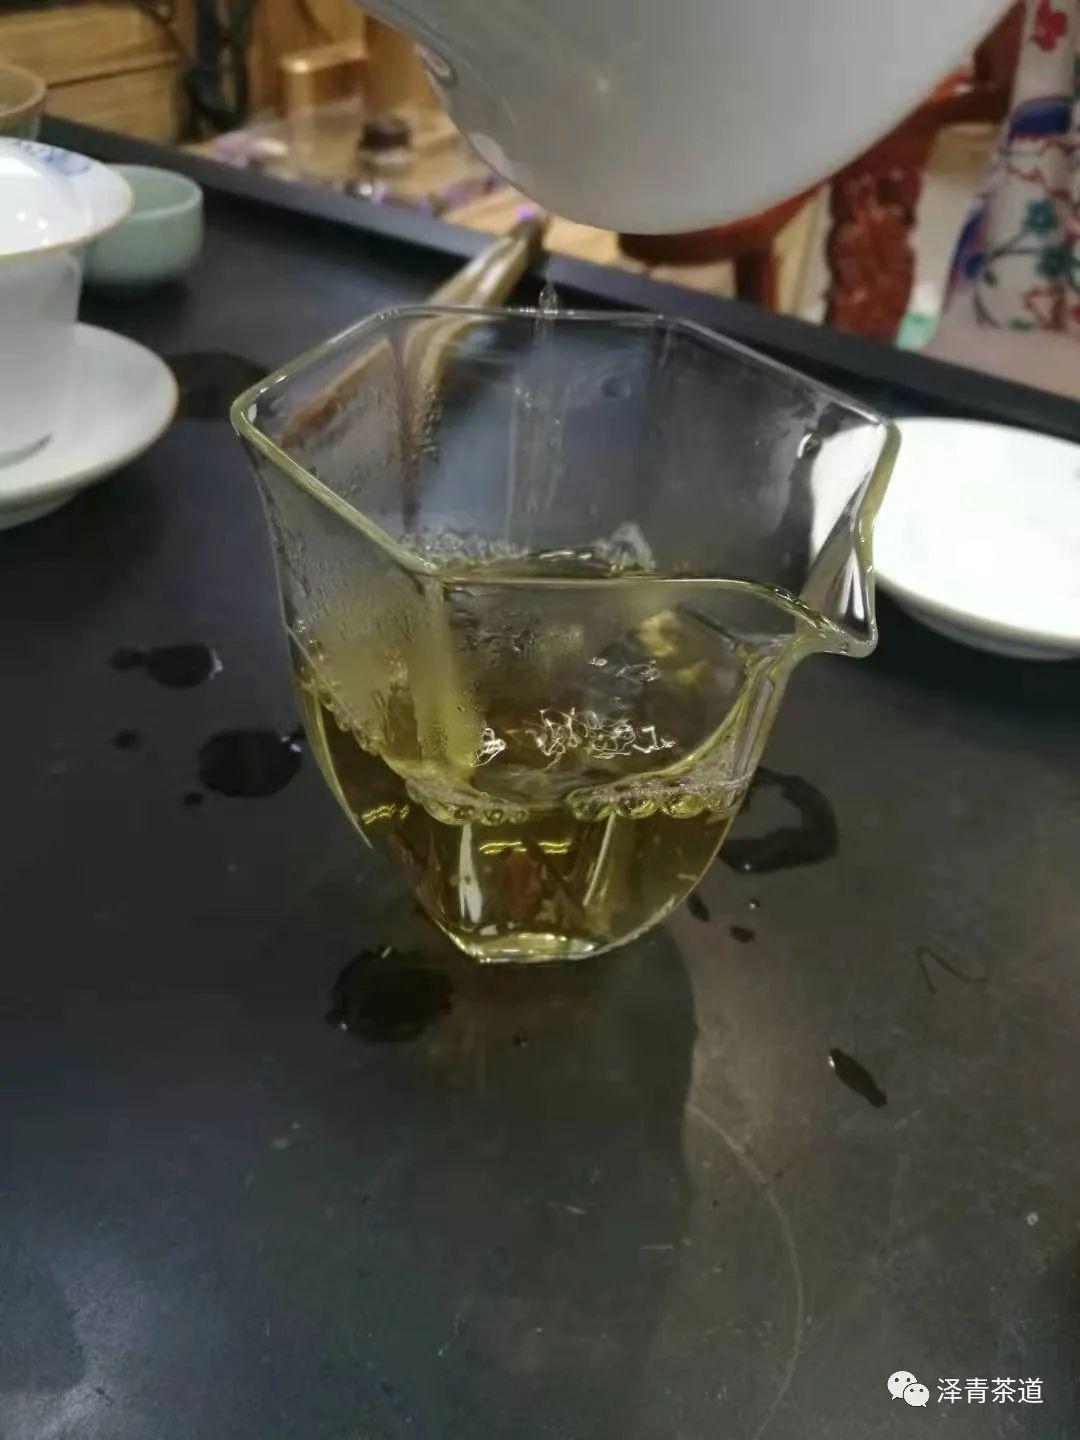 富硒茶是普洱茶吗